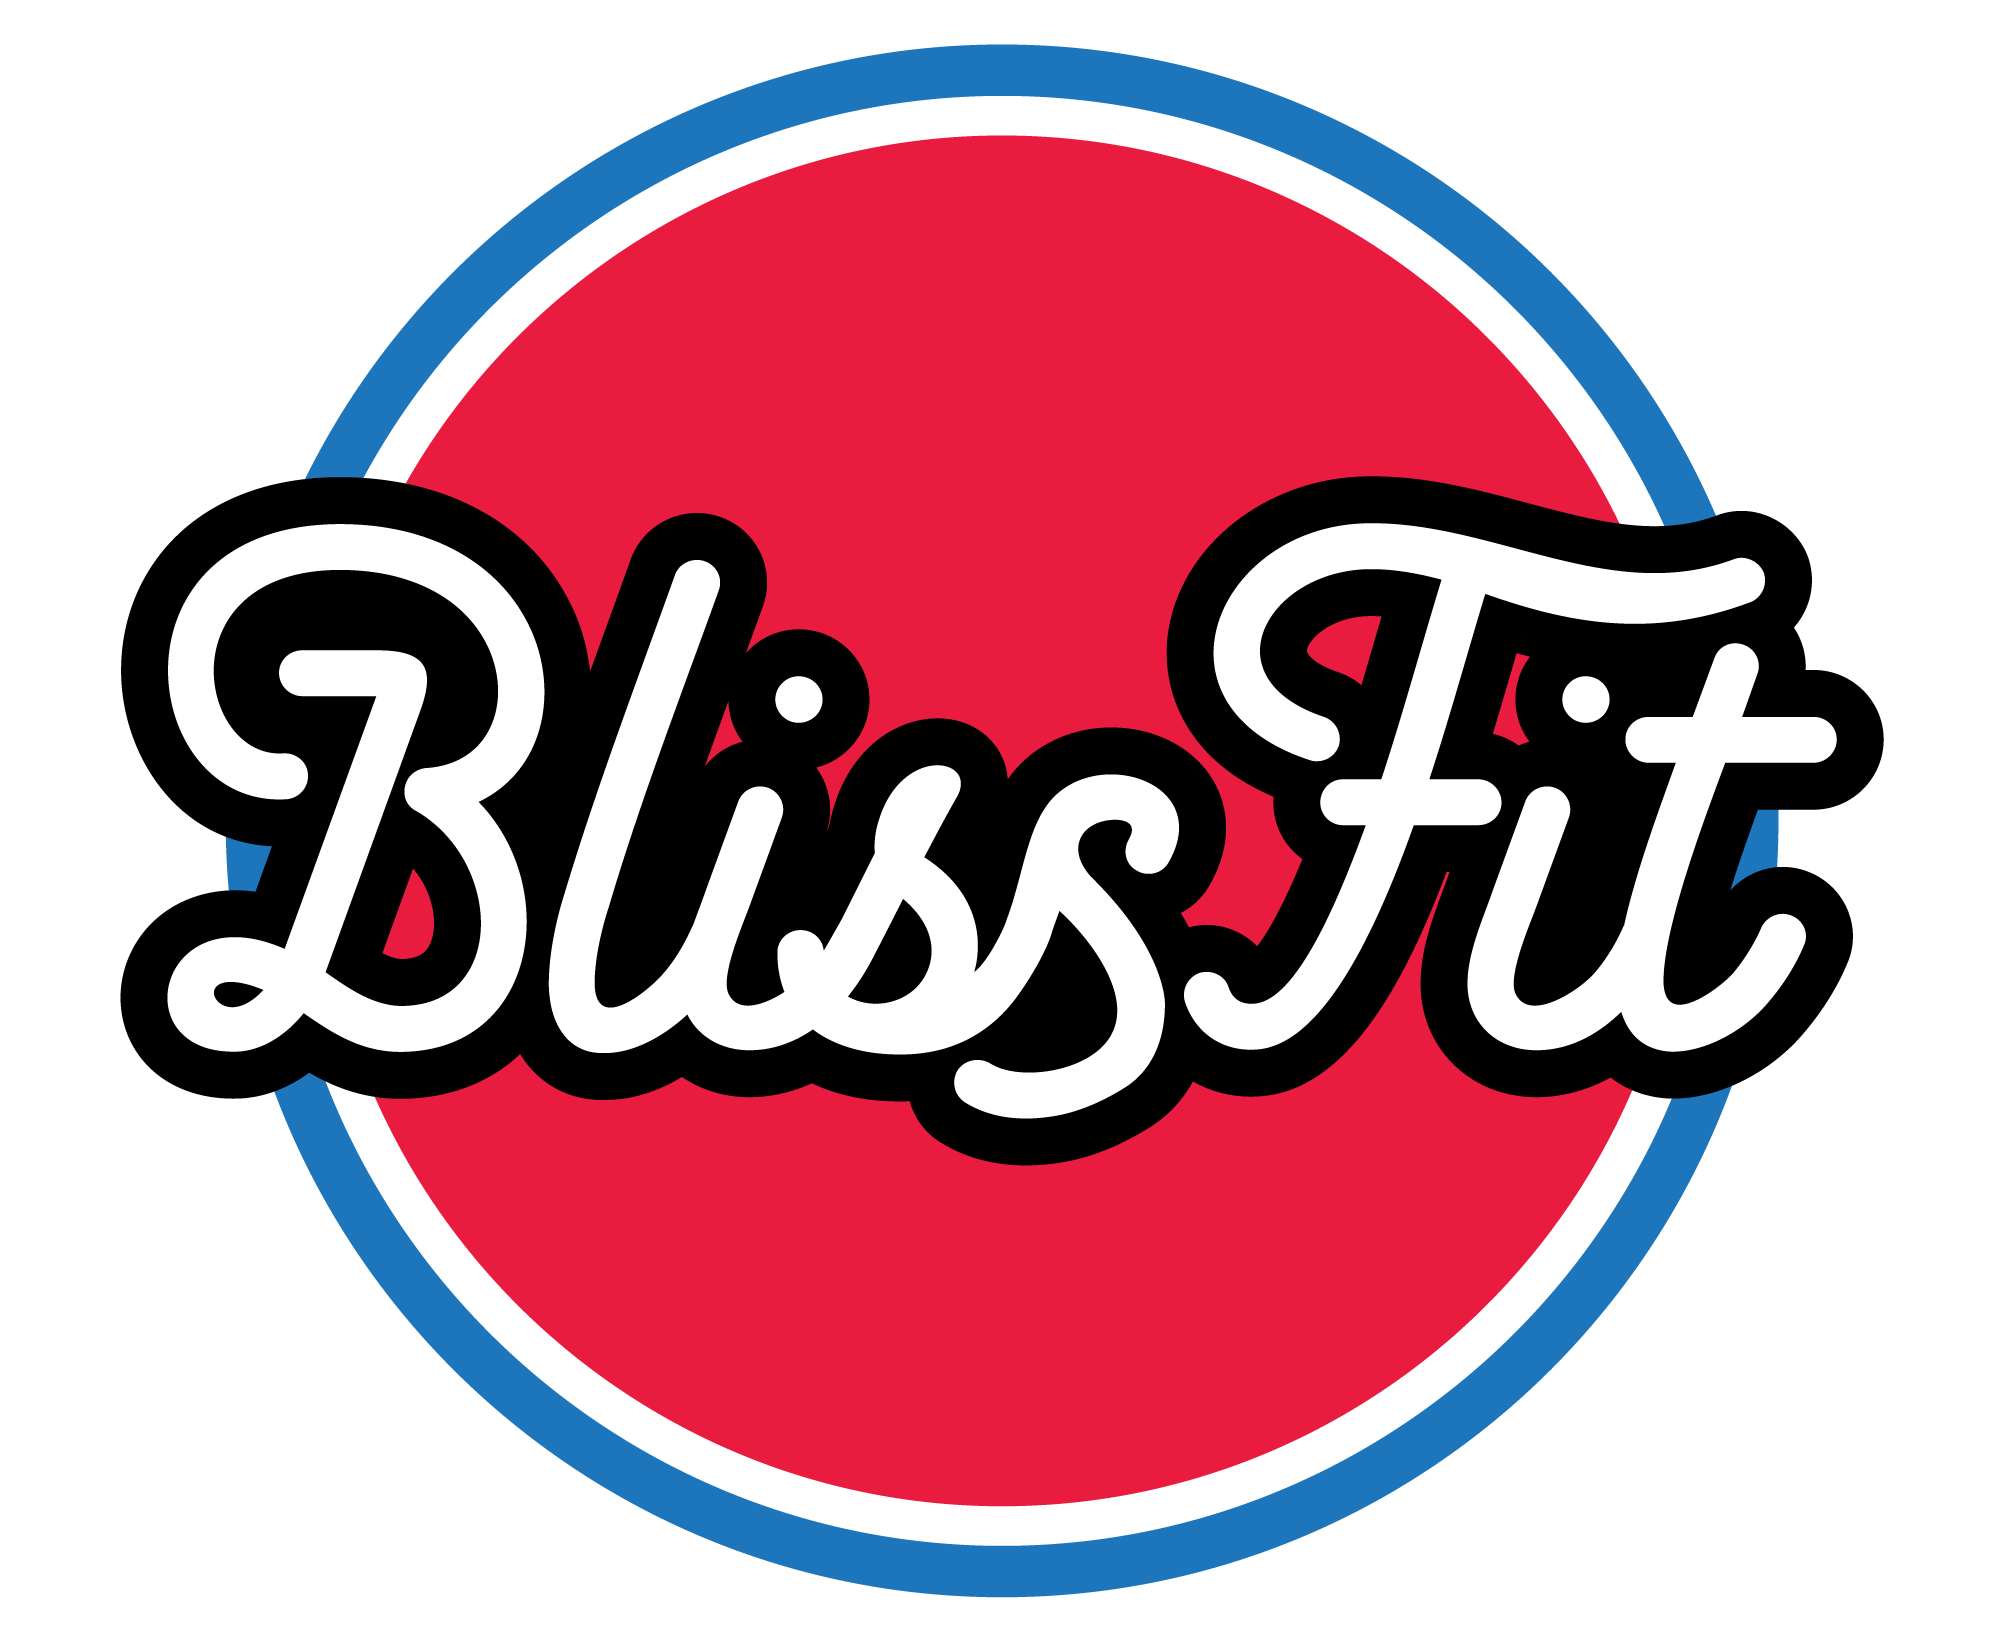 Blissfit